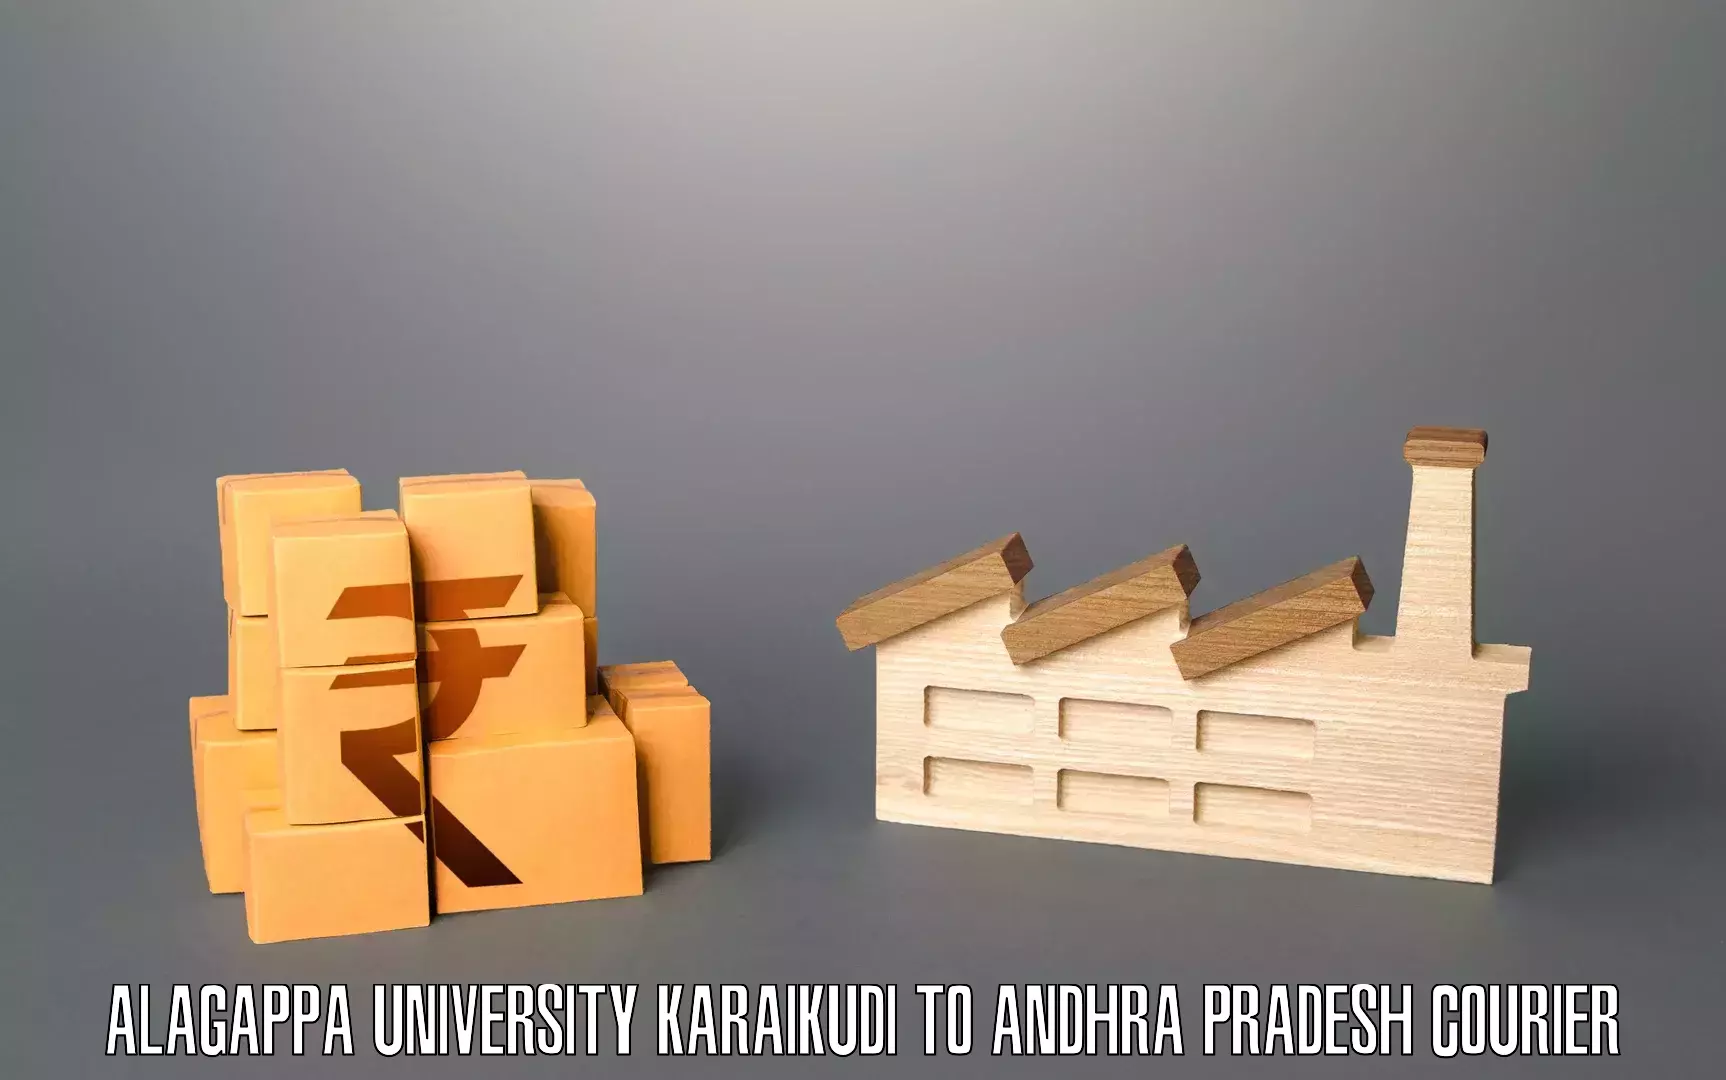 Home moving experts Alagappa University Karaikudi to Andhra Pradesh